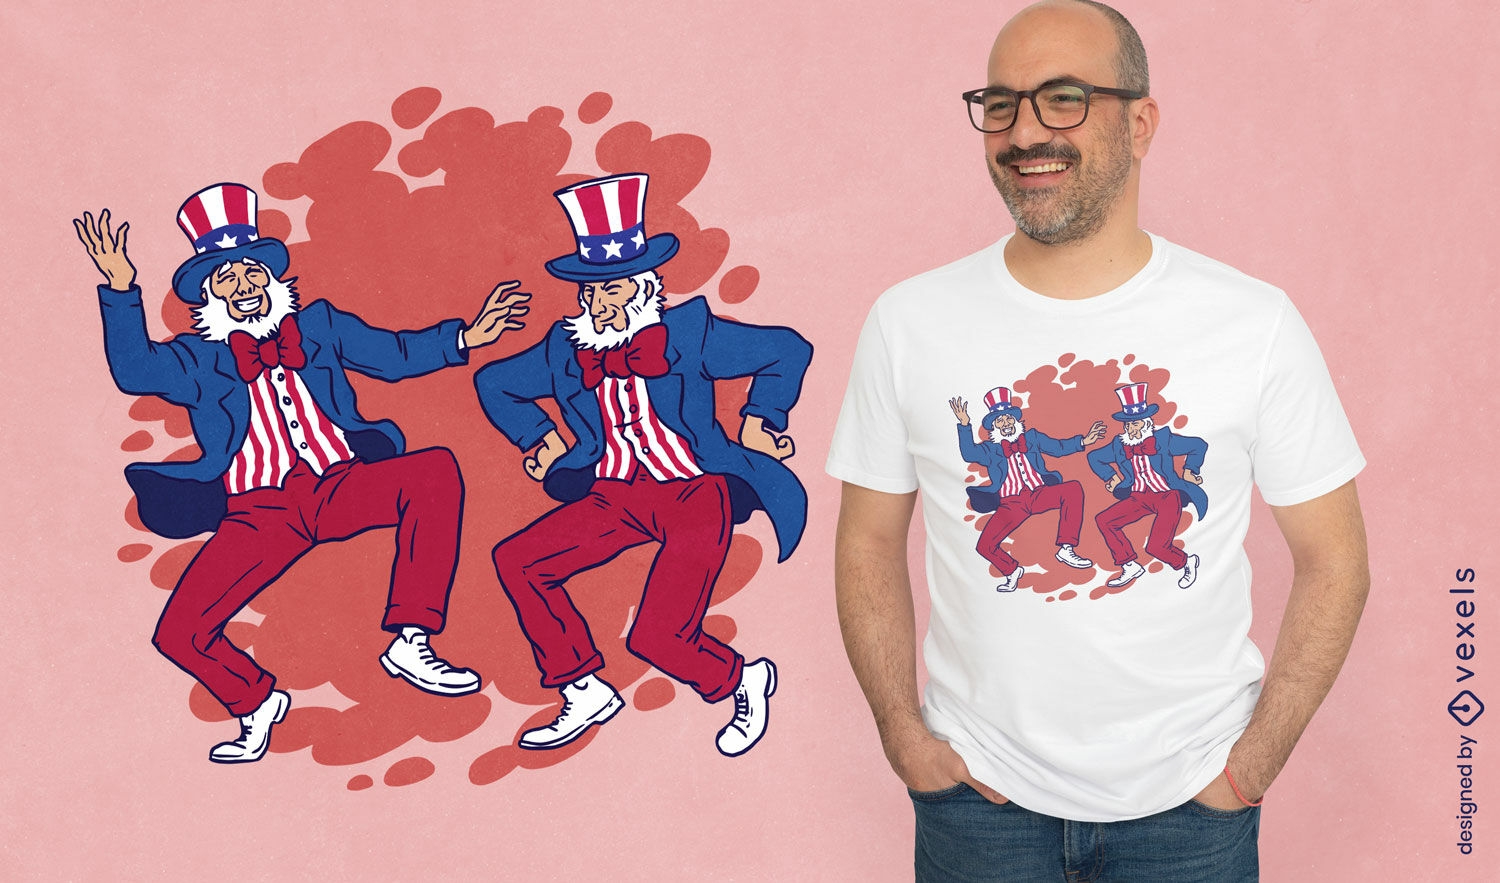 Uncle Sam Tanzendes T-Shirt-Design - Vektor Download